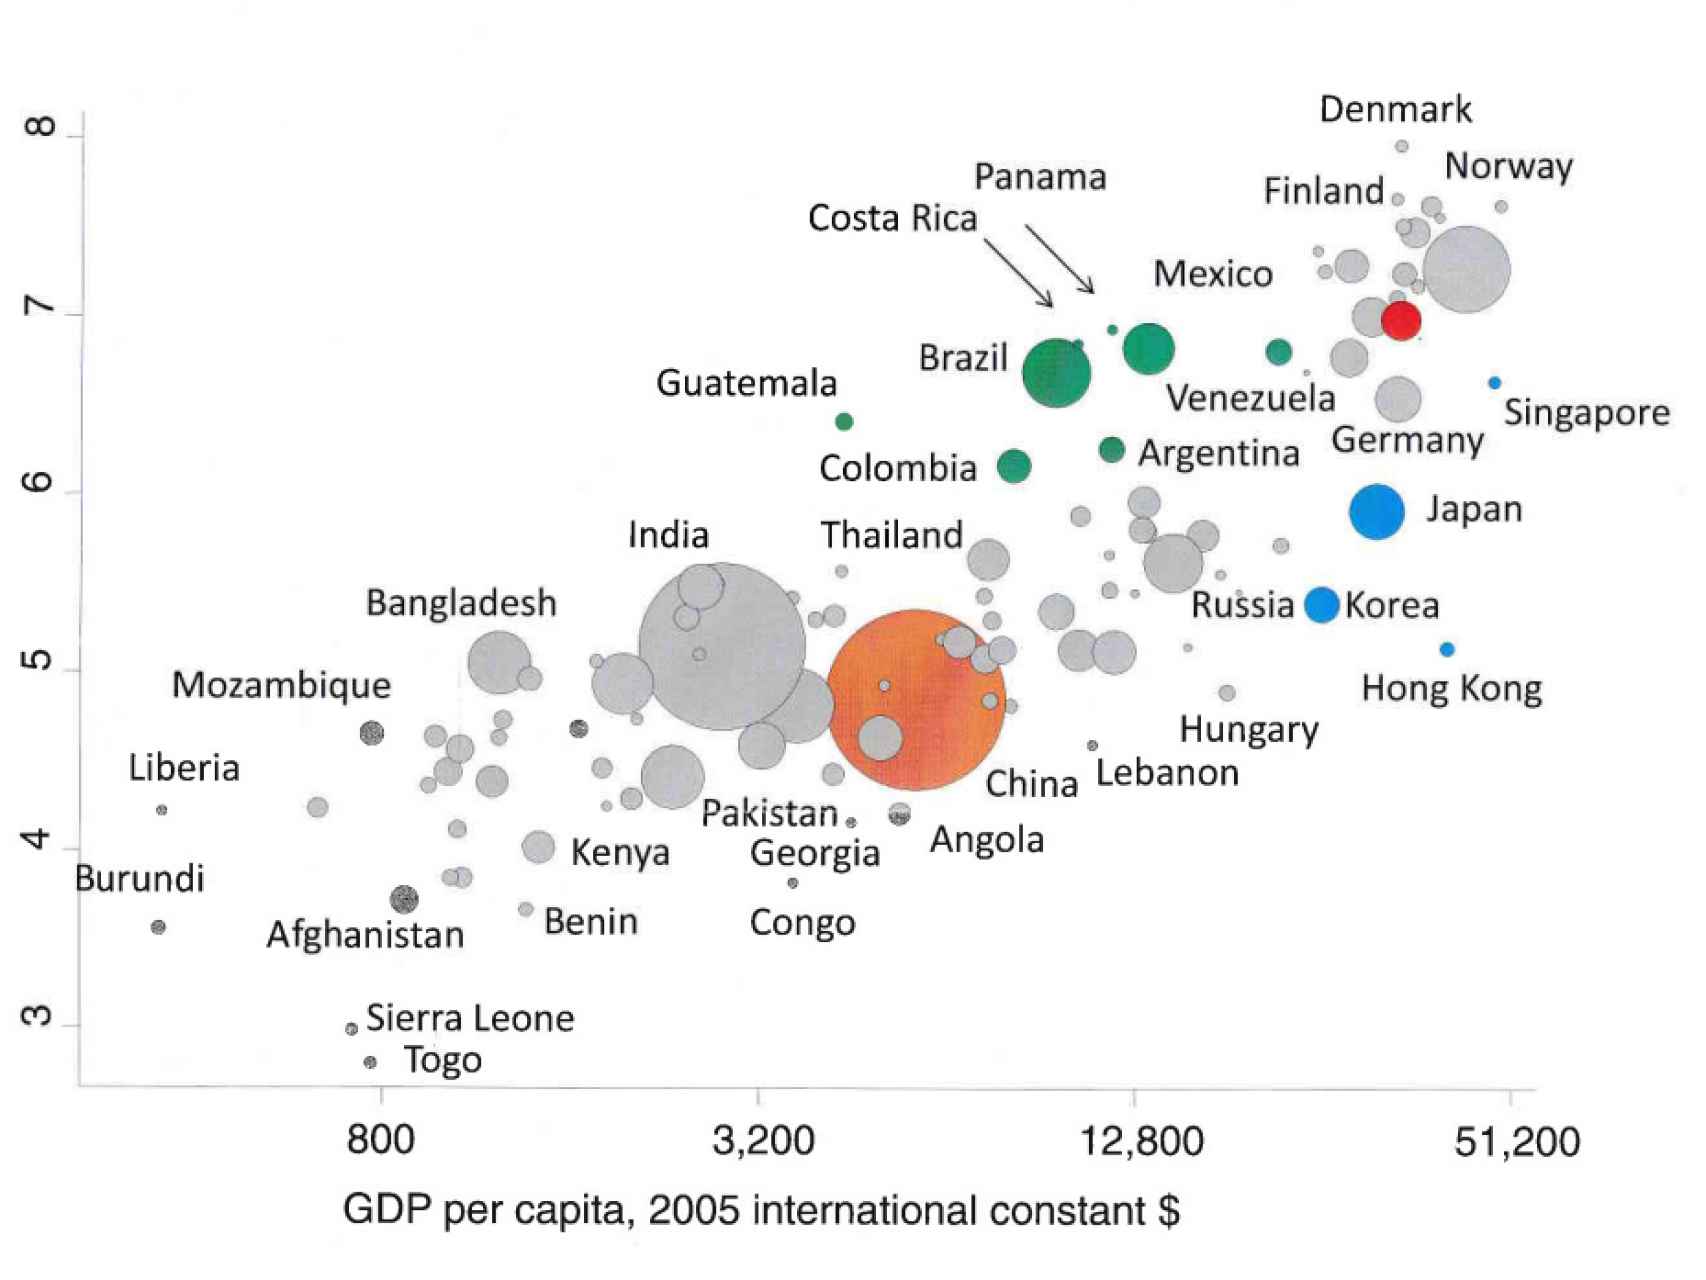 Satisfacción versus riqueza. El punto rojo corresponde a España.